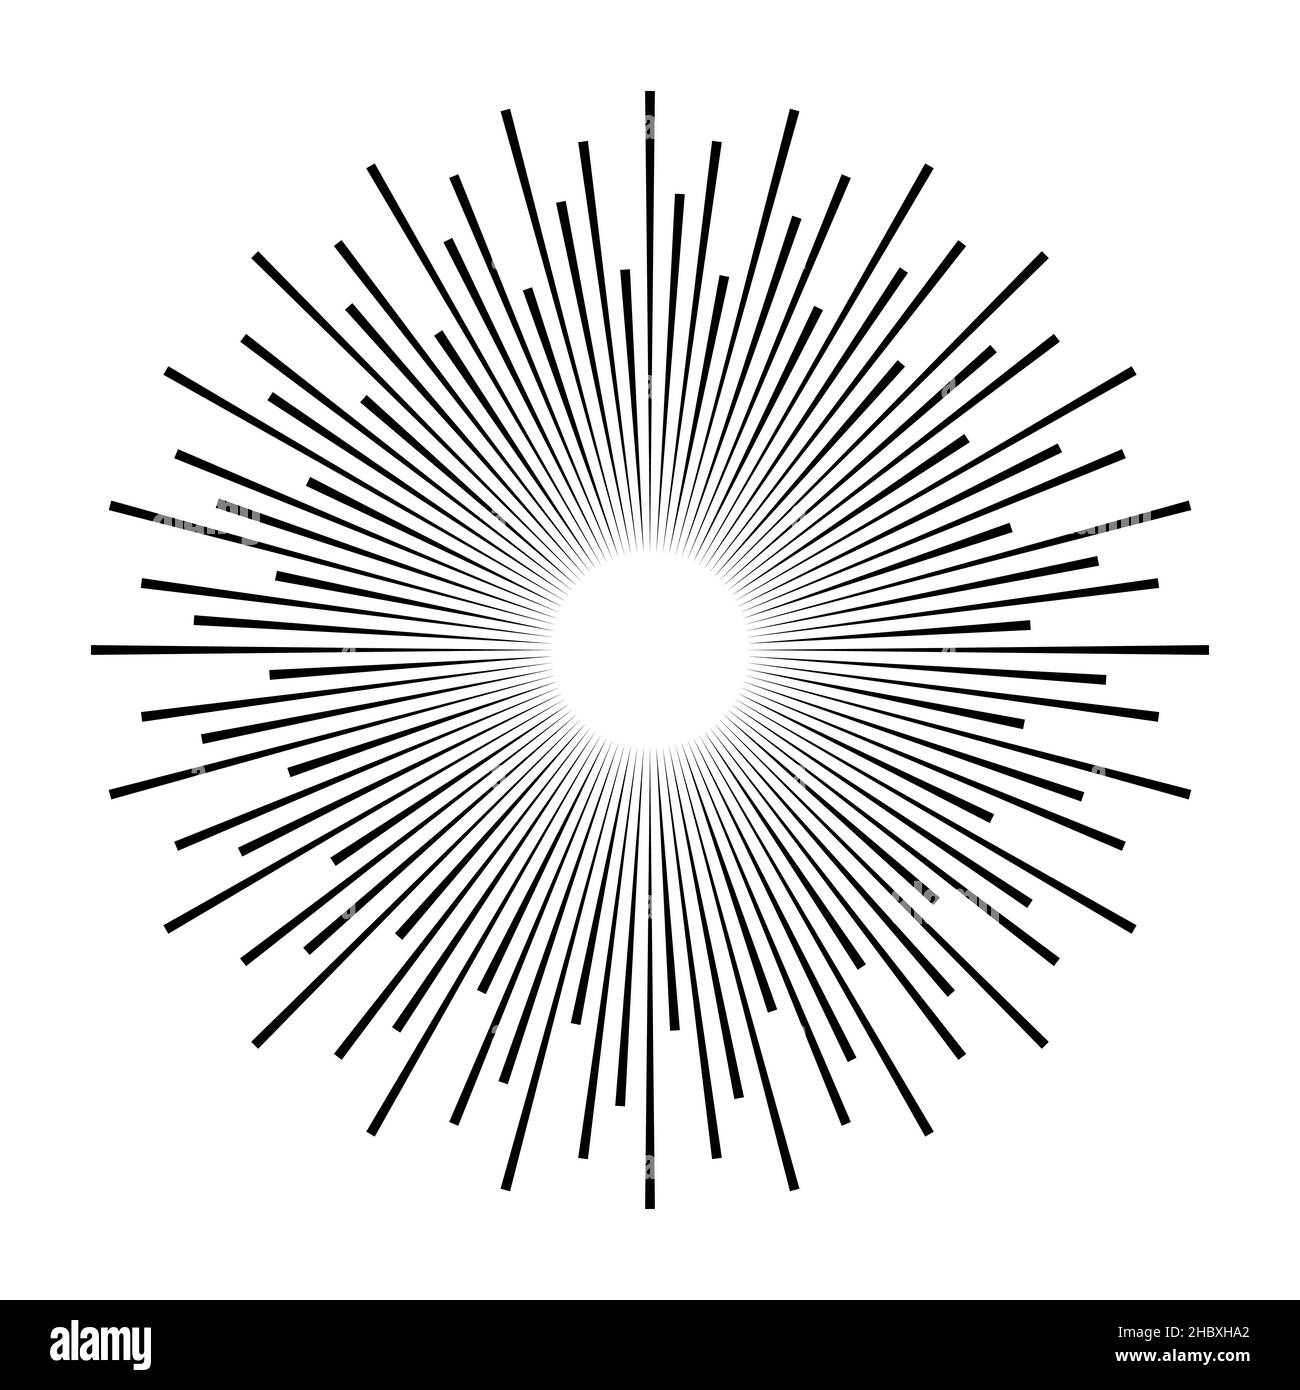 Vintage rayons de soleil monochrome star burst design élément Starburst stock illustration Illustration de Vecteur